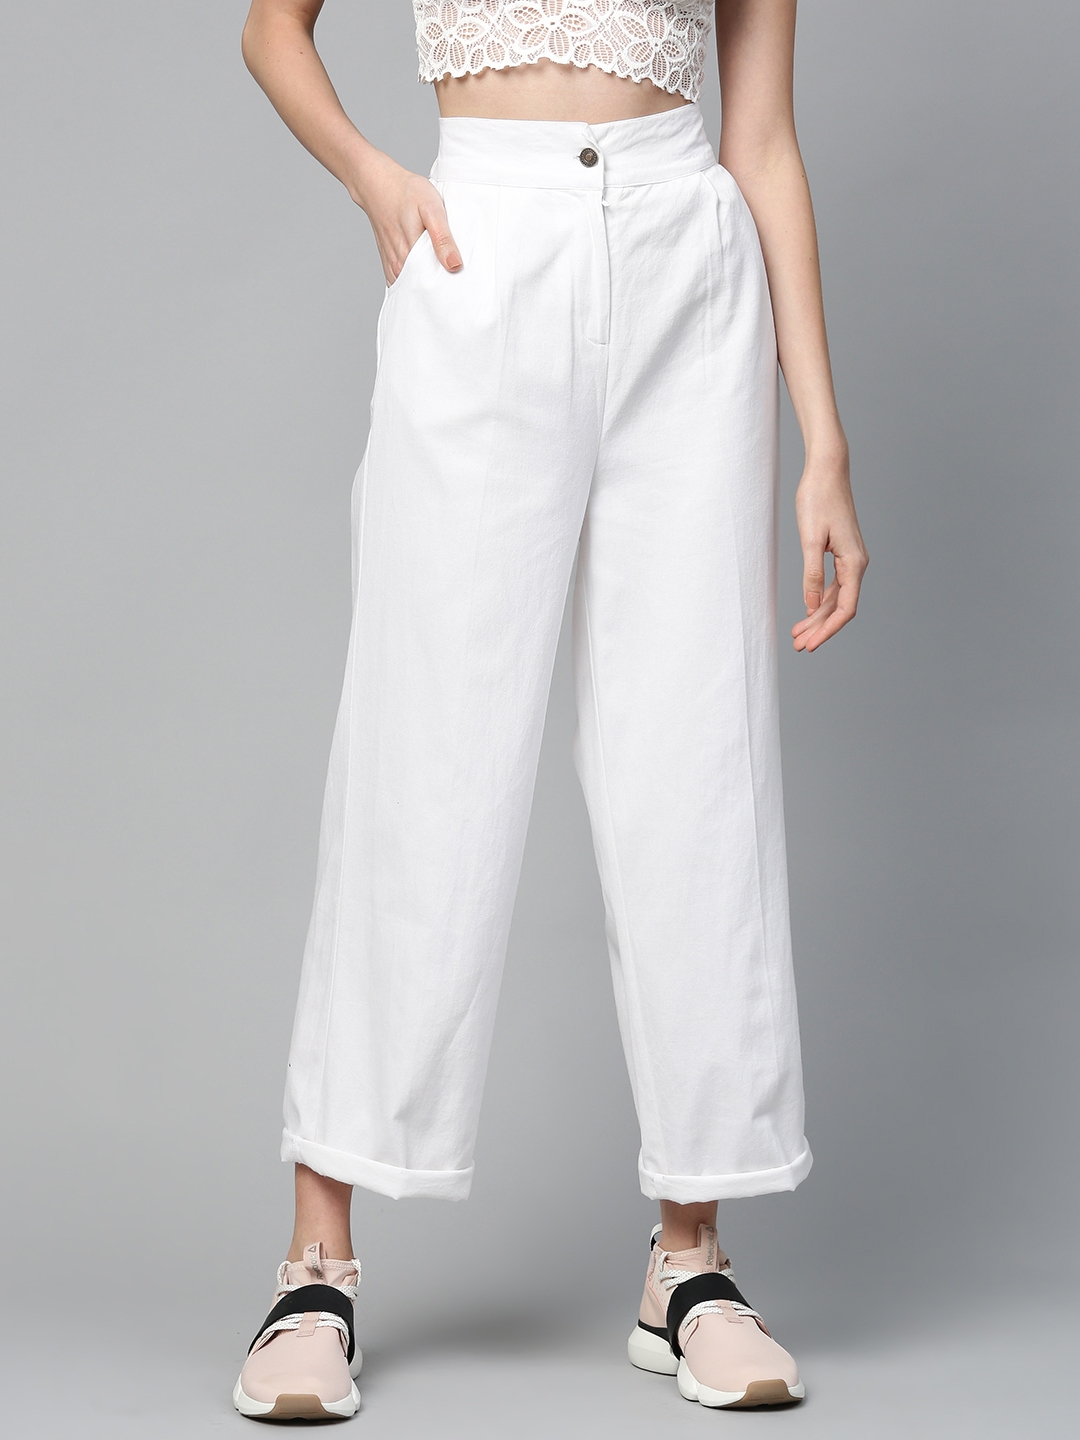 Enjoy 164+ white pants for women super hot